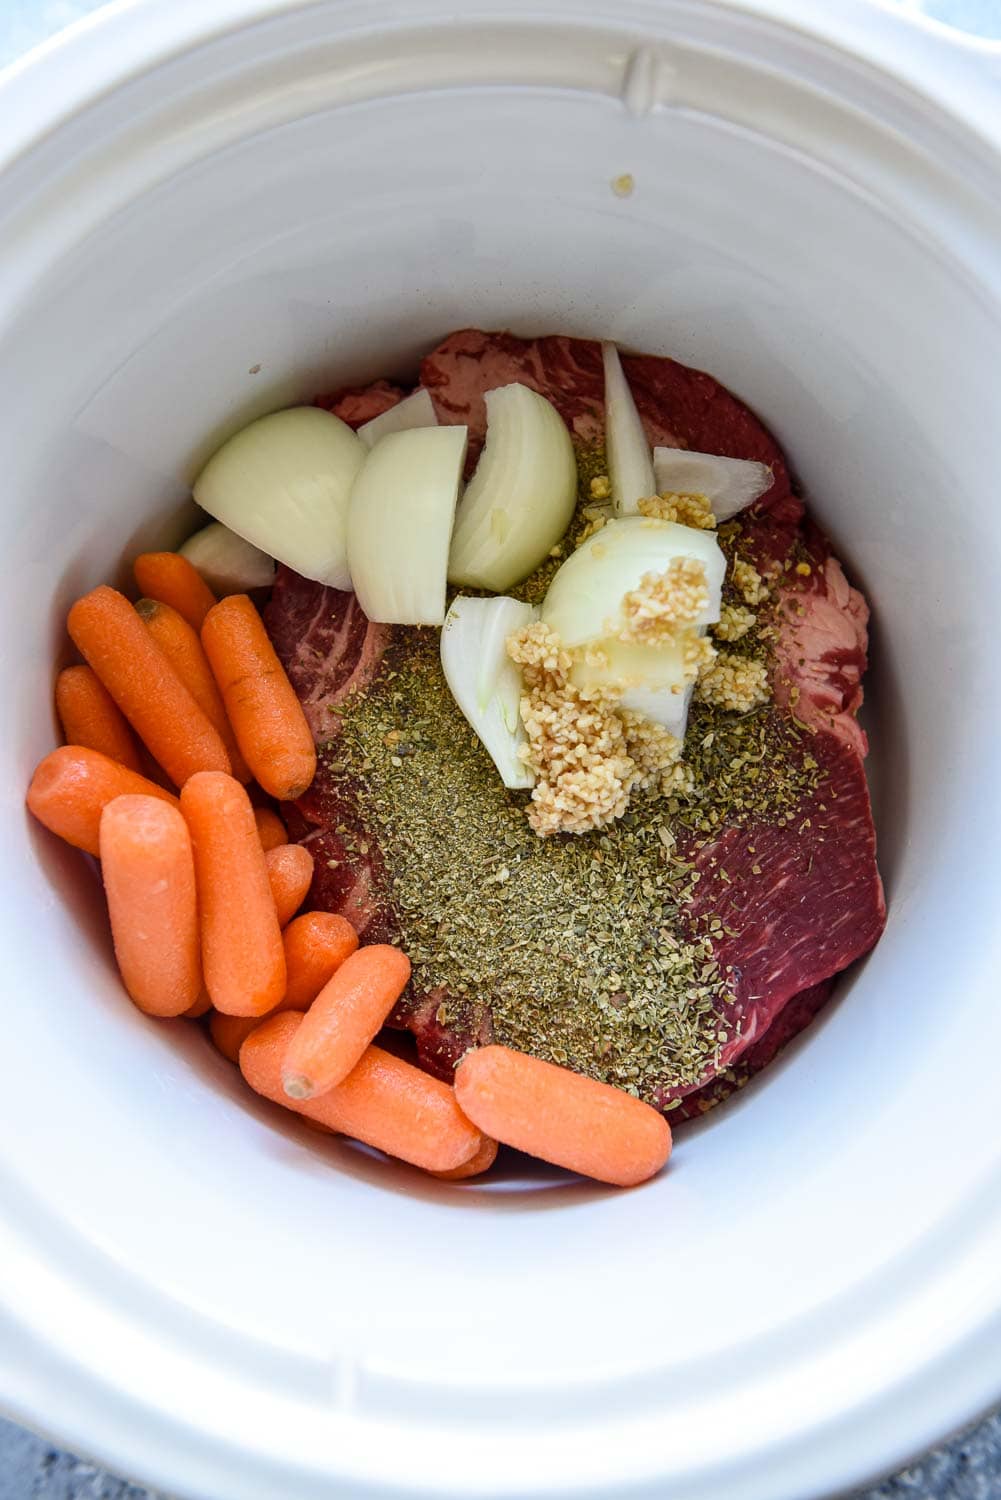 Enjoy roast & carrots w/ this 7-Qt. Crock-Pot slow cooker at just